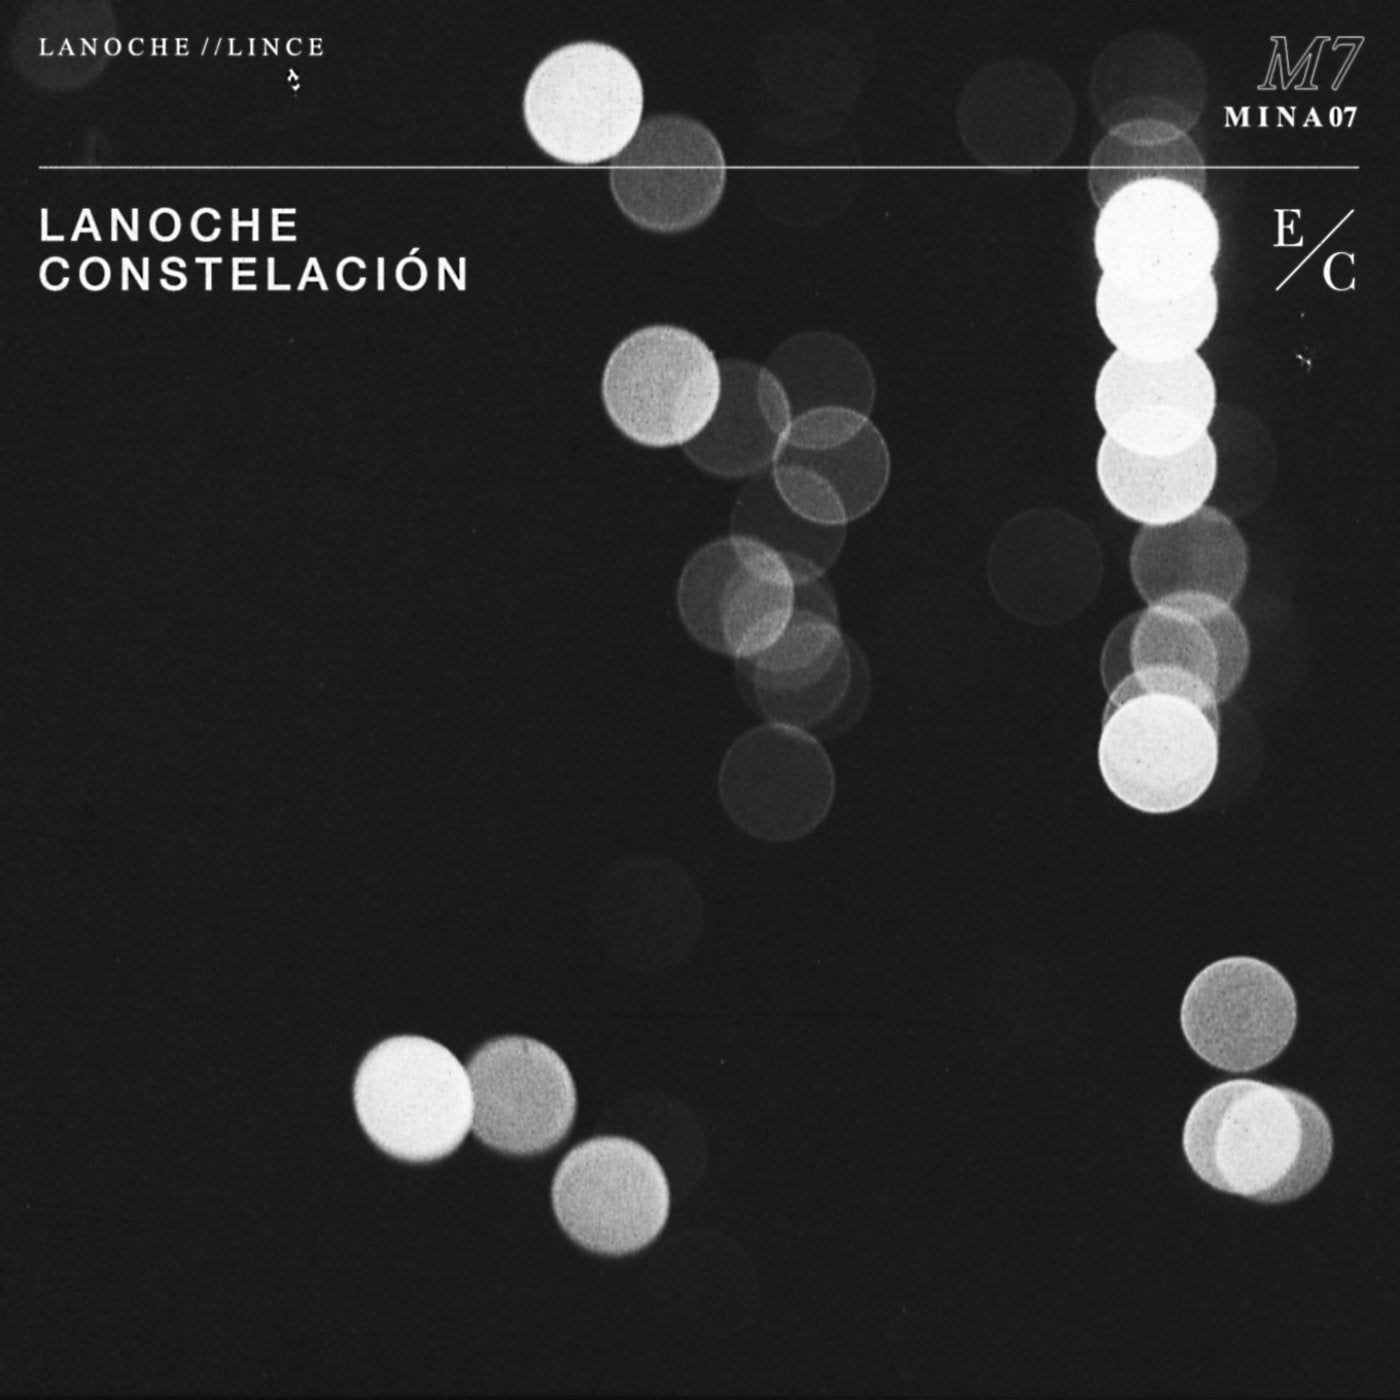 Constelacion